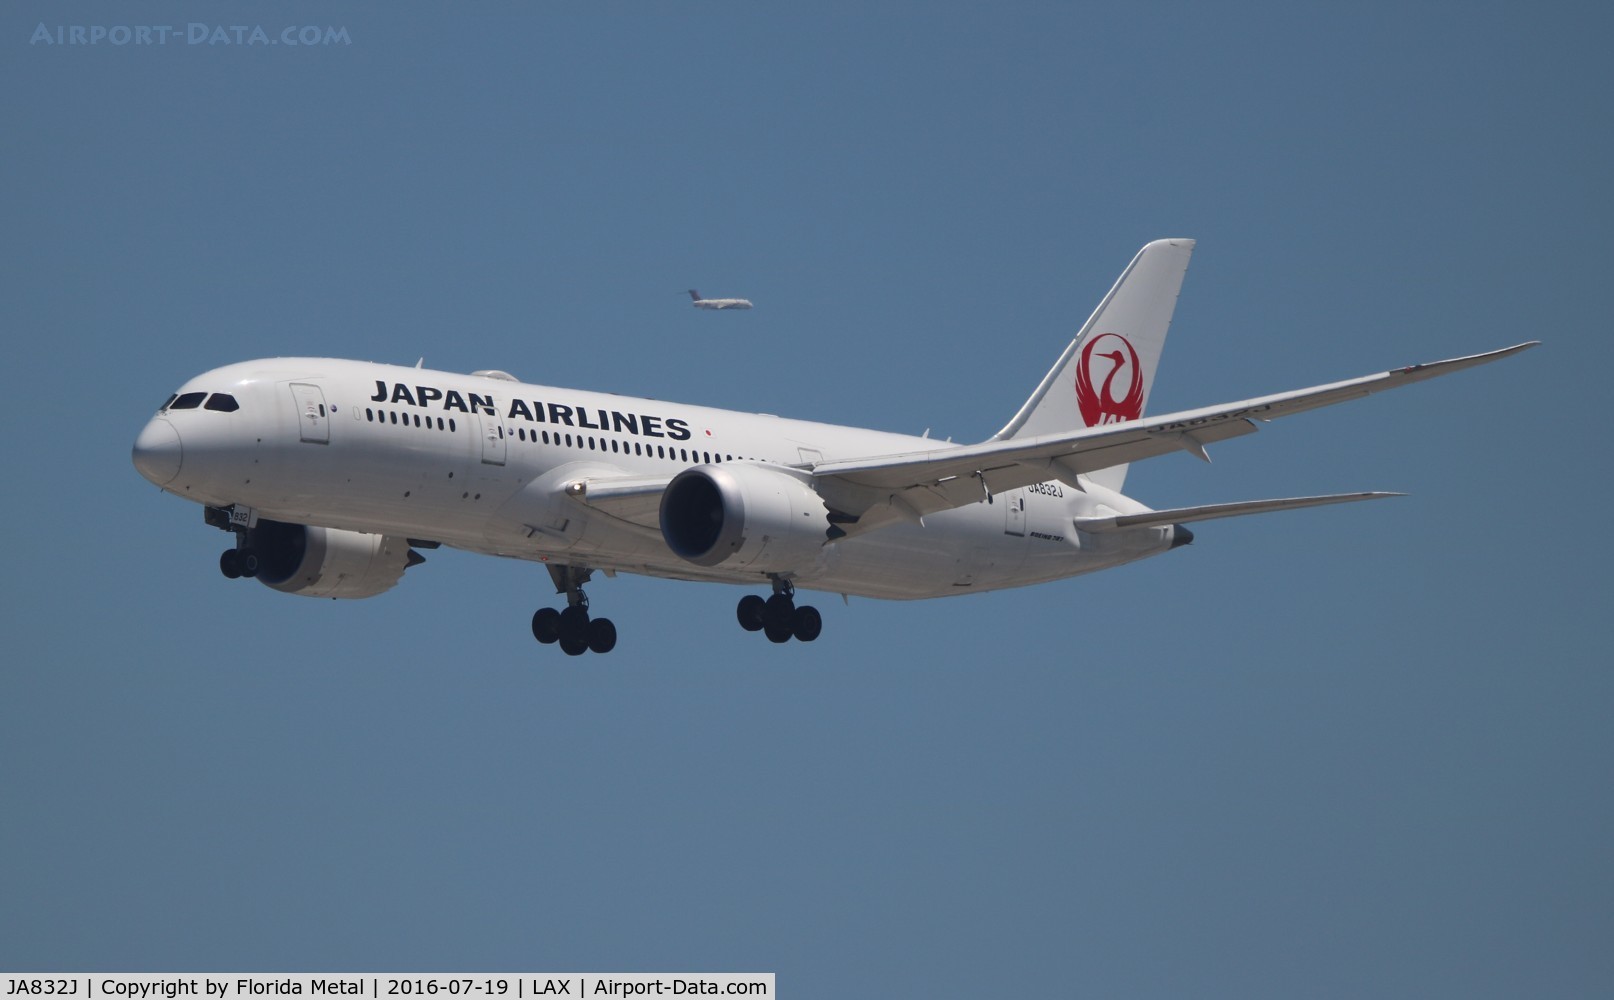 JA832J, 2013 Boeing 787-8 Dreamliner C/N 34844, Japan Airlines